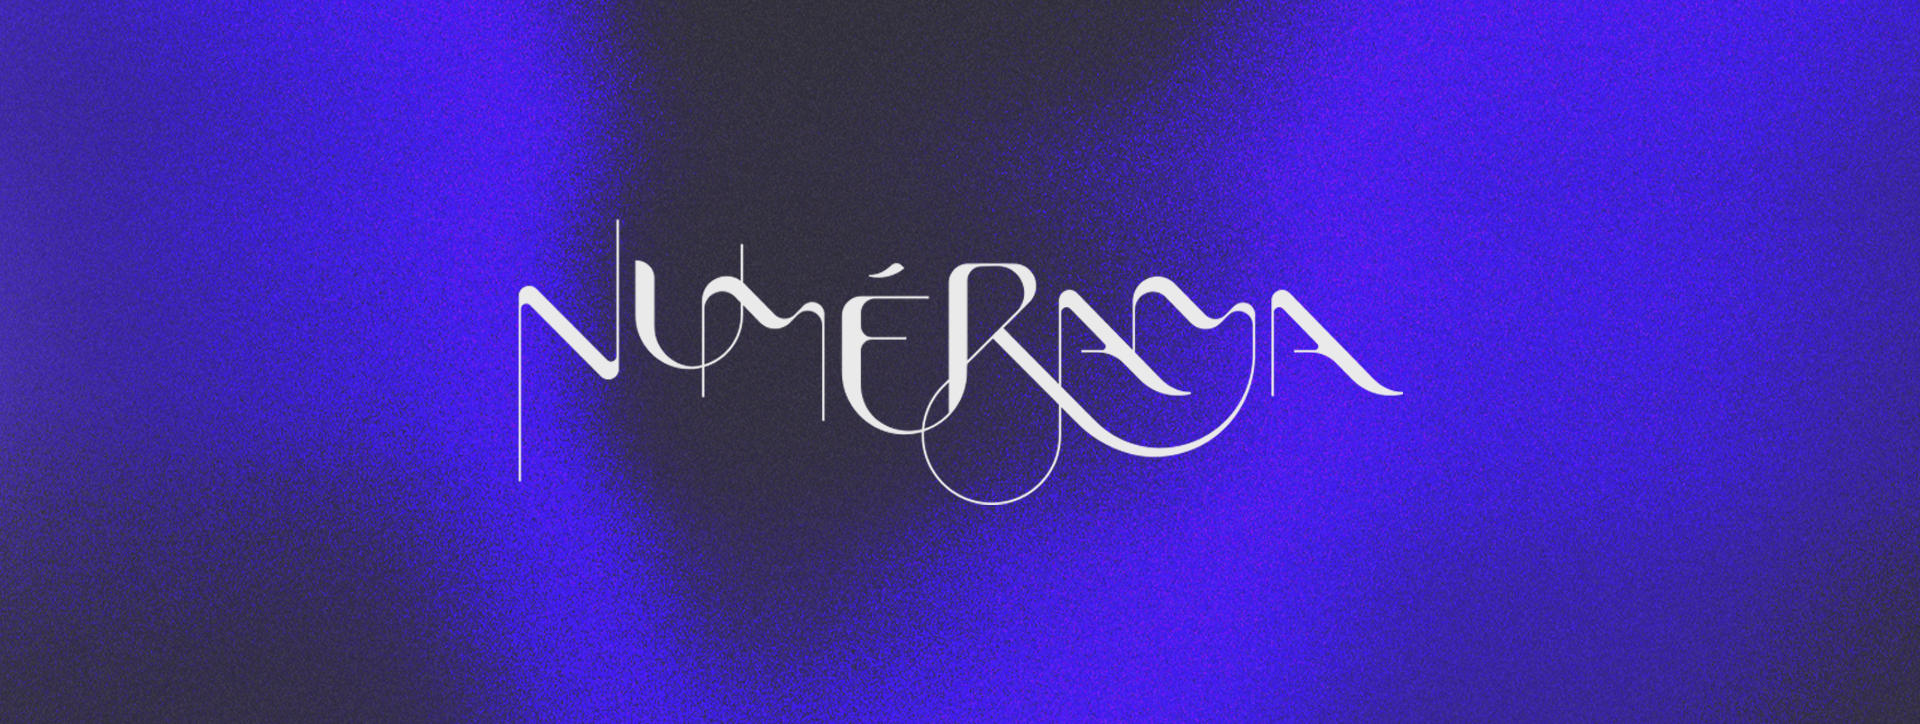 numerama-adrienducrocq-logo-texture-festival-branding-lille<br />
